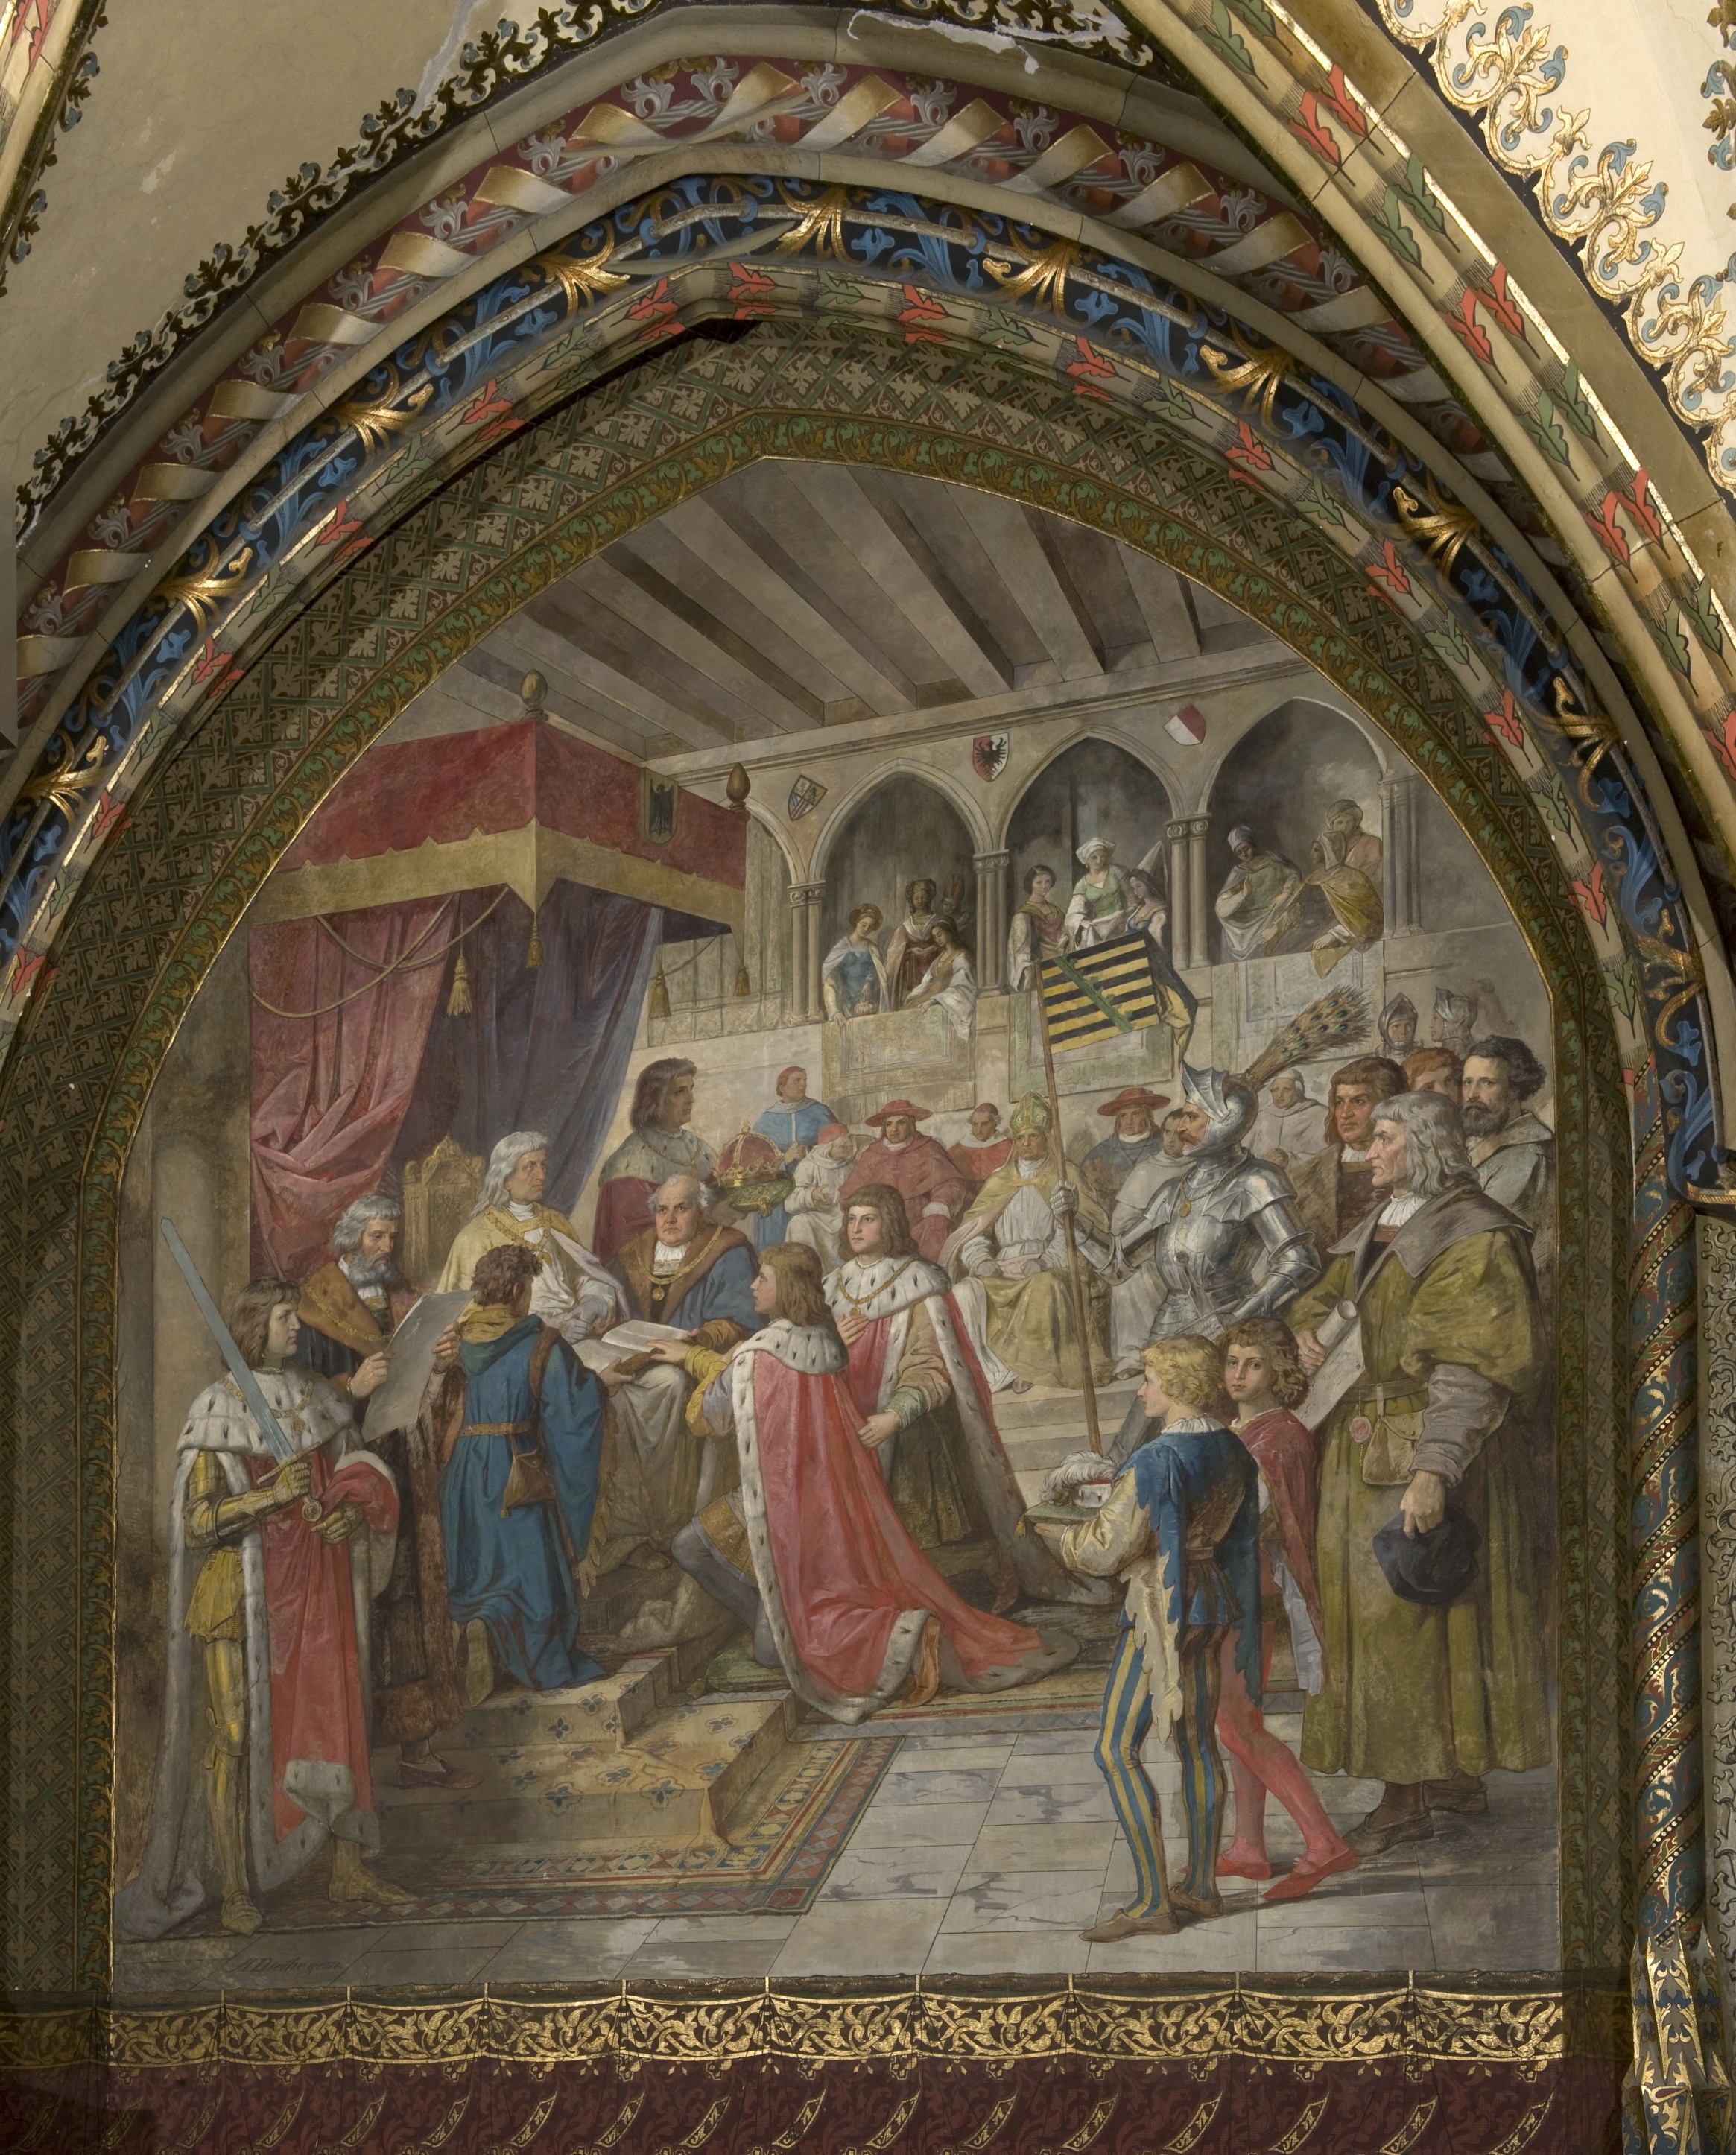 Wandbild:
"Die Belehnung der
Prinzen Ernst und Albrecht durch ihren Oheim Kaiser Friedrich III., 1465" (SBG gGmbH CC BY-NC-SA)